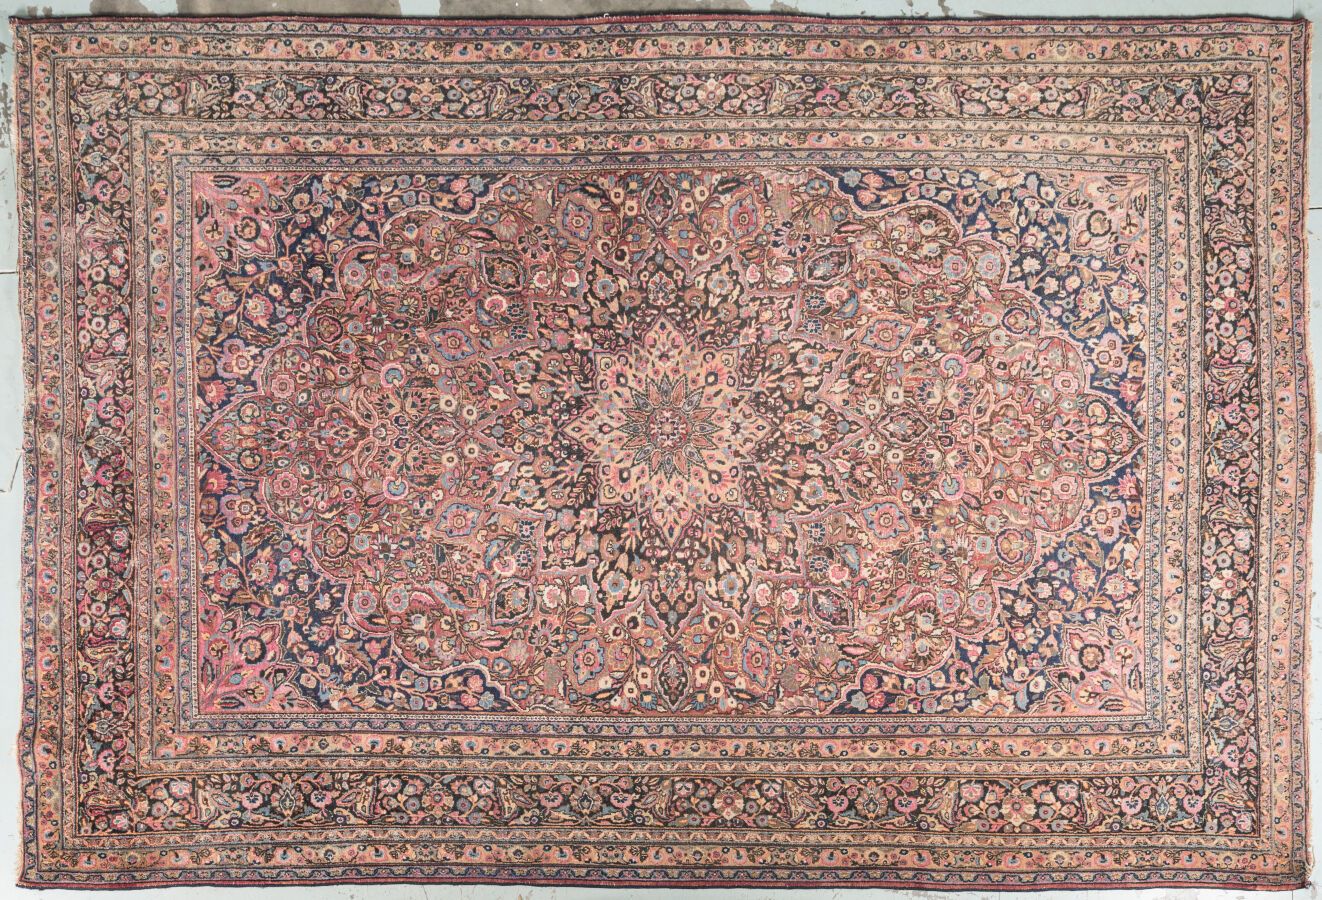 Null 手工编织的大型羊毛地毯，多色背景上饰有中央玫瑰花窗。尺寸 400 x 278 厘米
磨损和轻微事故。